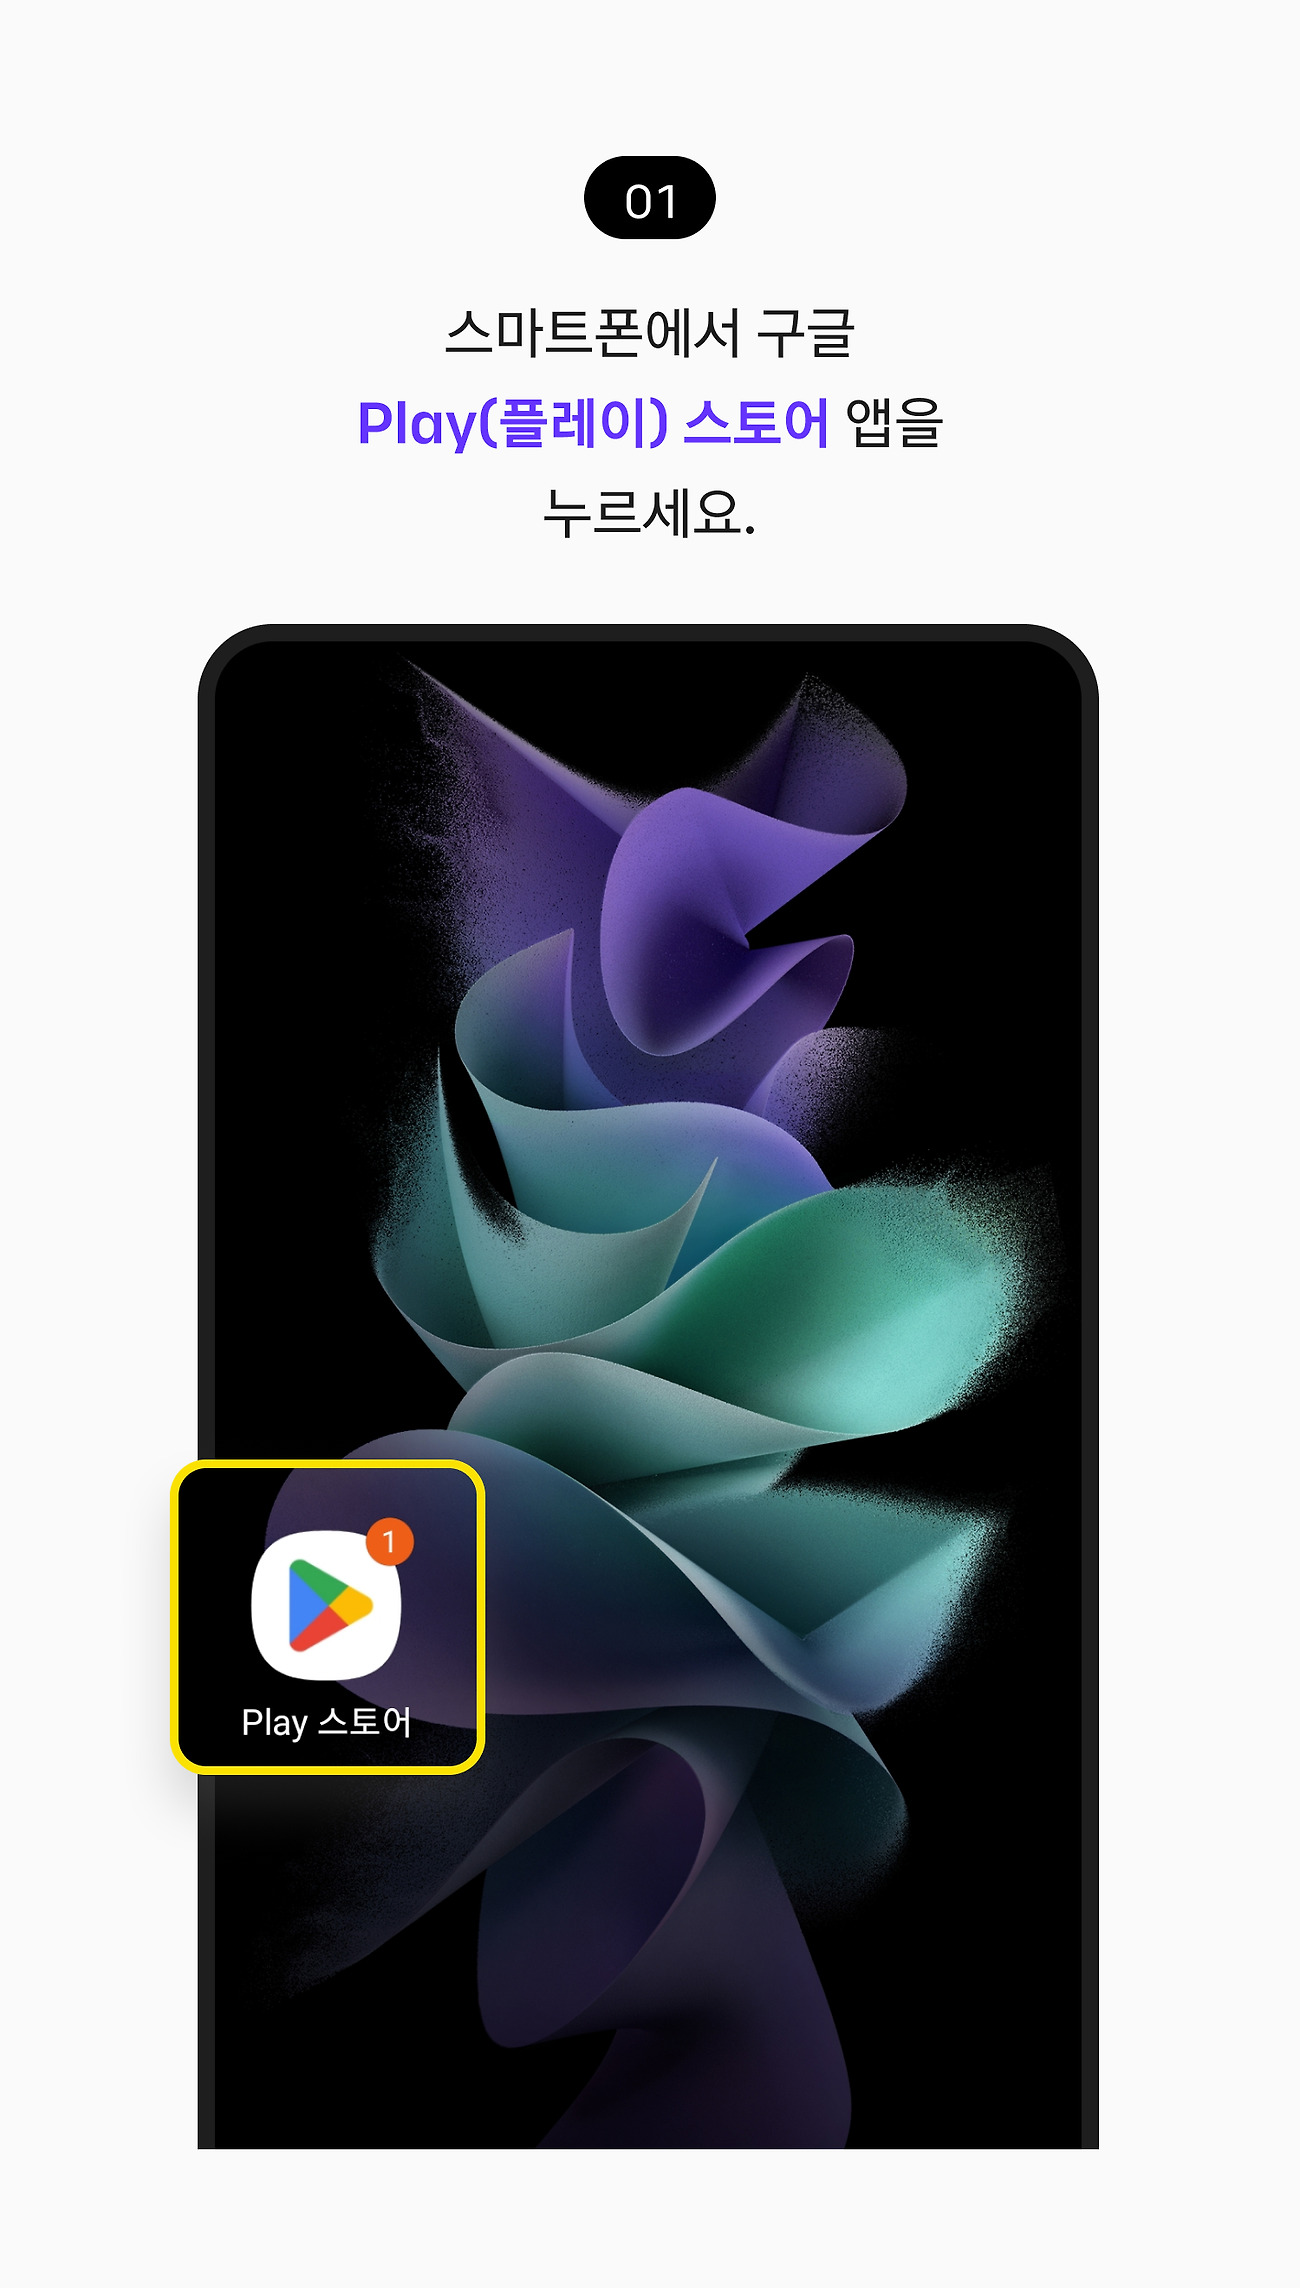 안드로이드 스마트폰에 설치하기 01. 스마트폰에서 구글 Play(플레이) 스토어 앱을 누르세요.